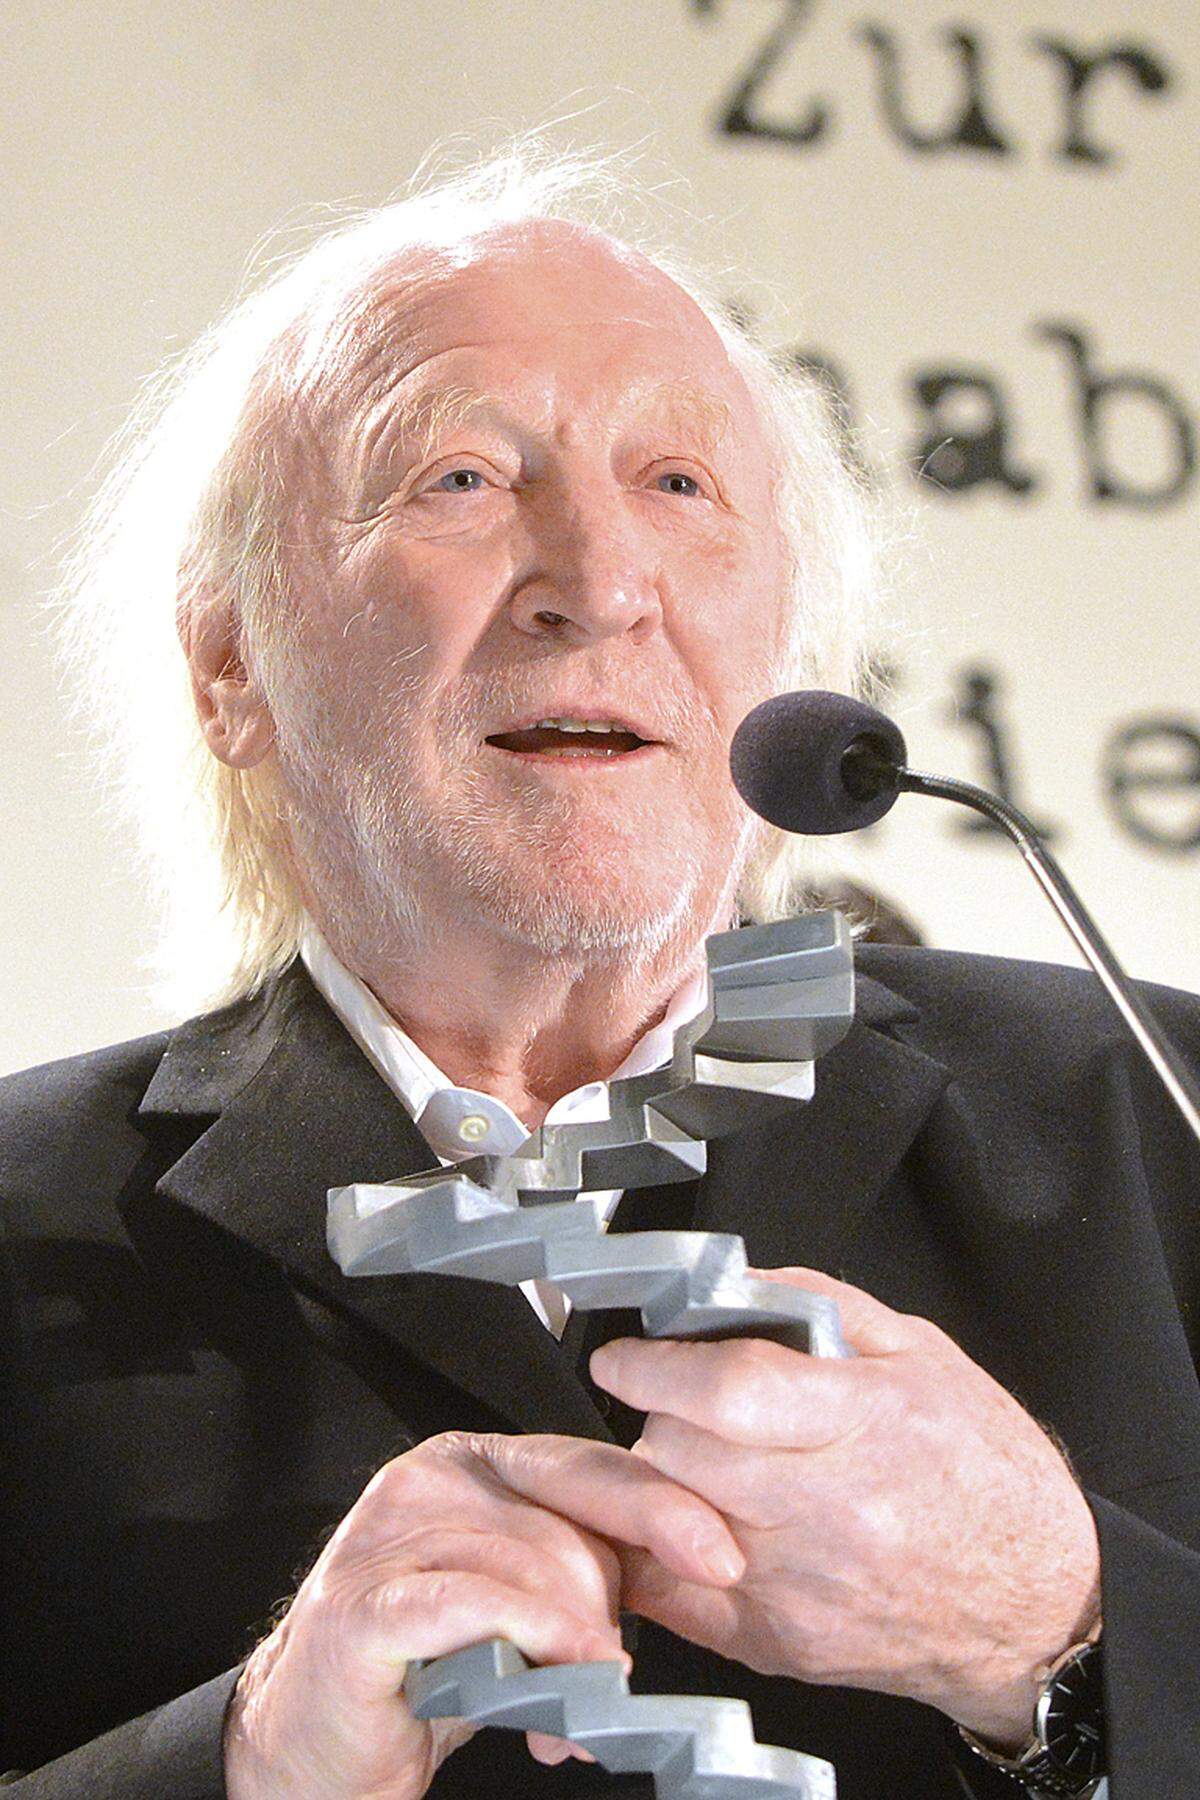 Auch Karl Merkatz wurde beim Österreichischen Filmpreis, der zum dritten Mal vergeben wurde, ausgezeichnet. Der 82-Jährige wurde für seine Rolle in "Anfang 80" zum besten Hauptdarsteller gekürt und erhielt einen lang anhaltenden Applaus der rund 1000 Gäste.